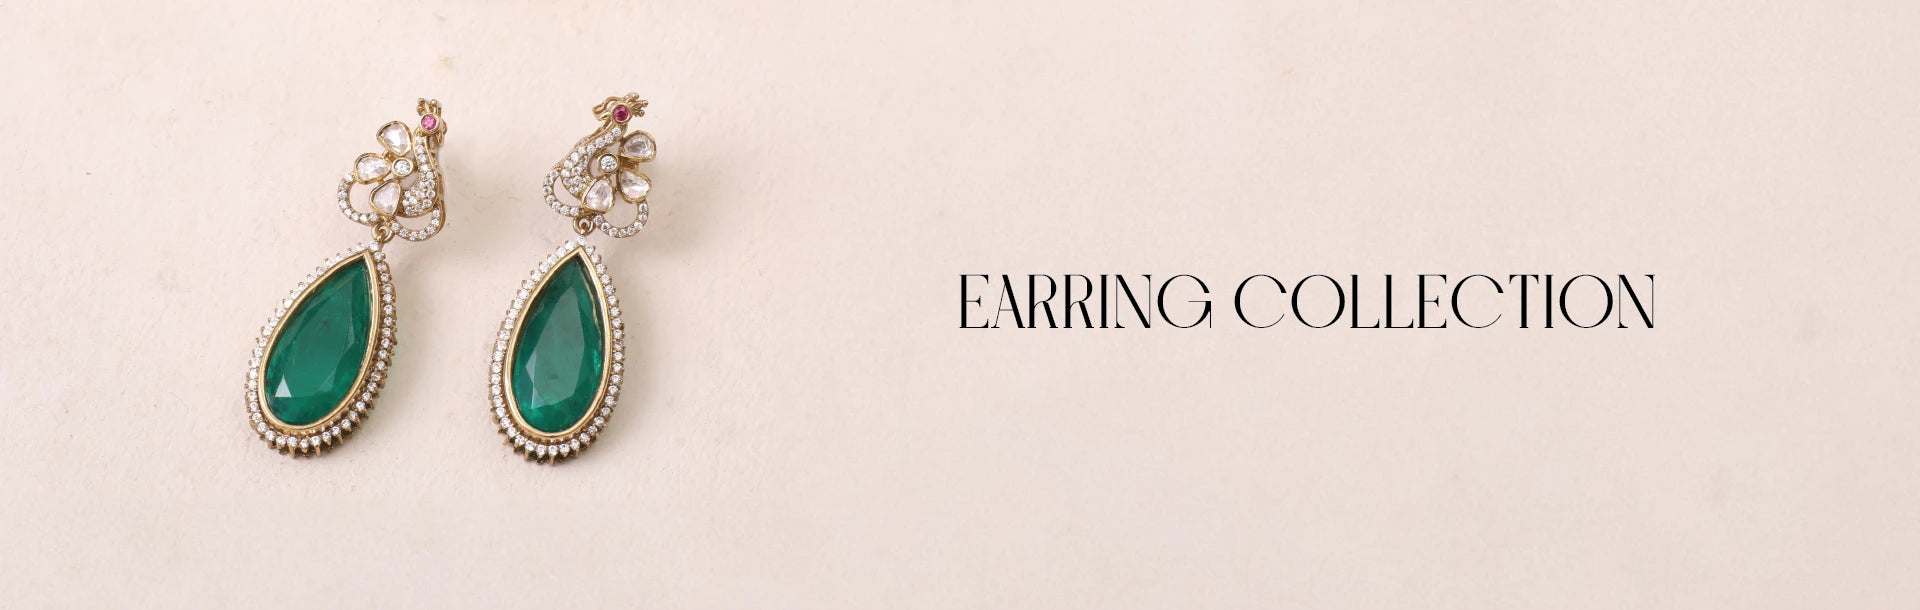 gold earrings|old earrings online|gold earrings for women|gold studs|gold  fancy earrings|gold studs for women|fancy earring|wome